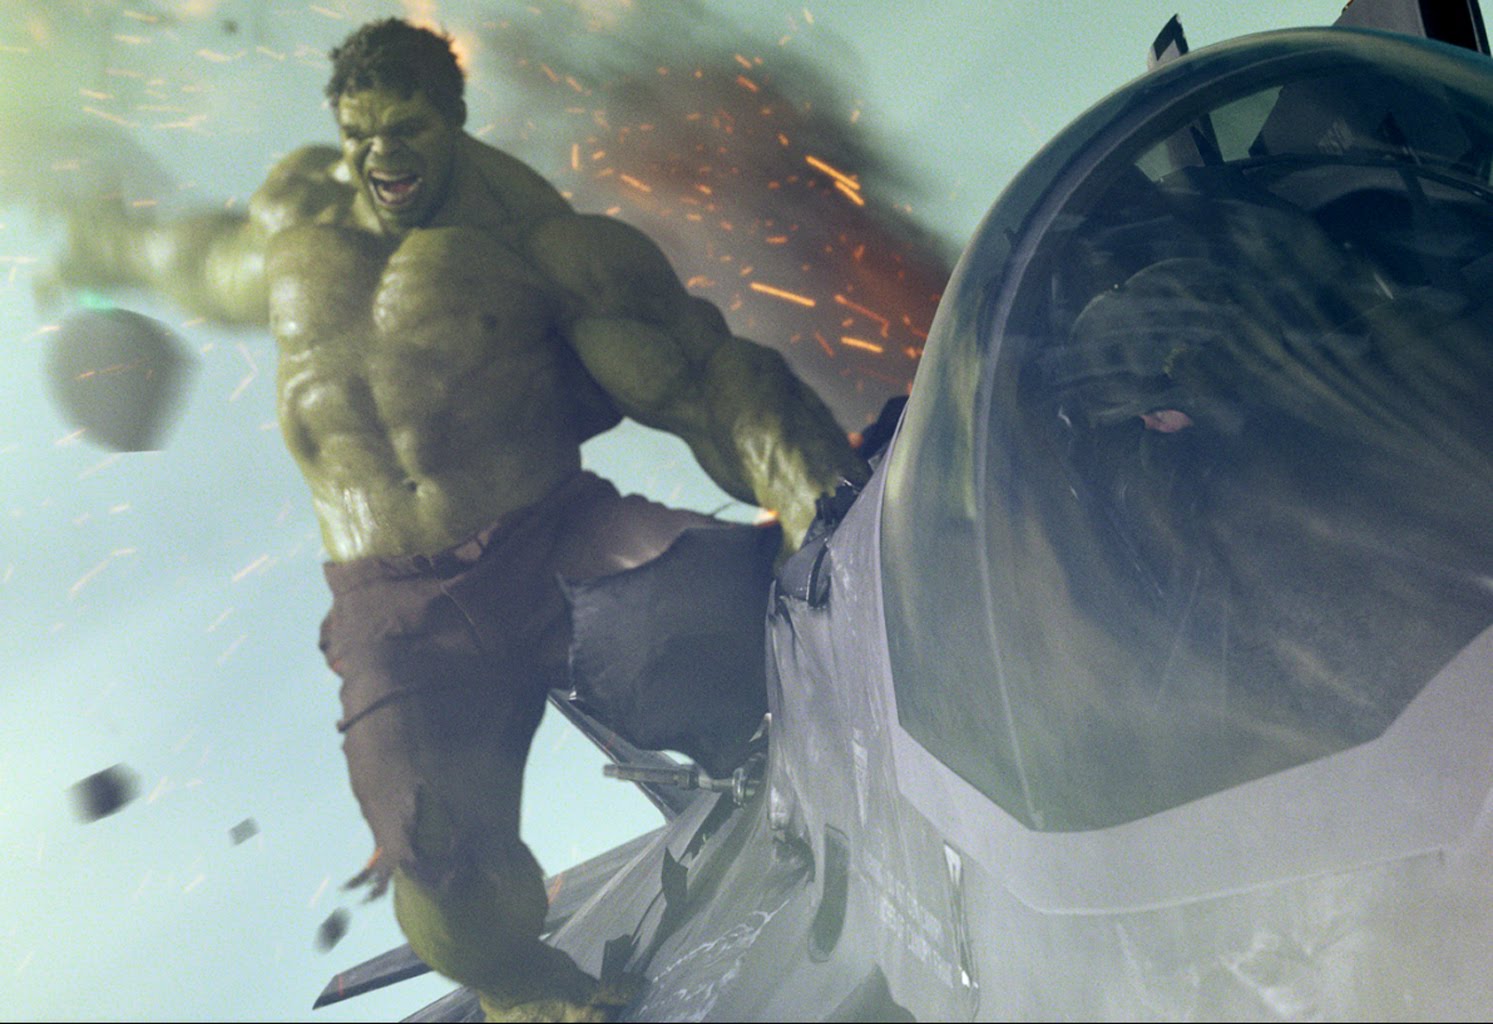 http://4.bp.blogspot.com/-RT4Ko55MgOA/UFutKhHEIYI/AAAAAAAAEfM/pjTtolx8G_w/s1600/Marvel-The-Avengers-Movie-2012-HD-Wallpaper-The-Hulk-Bruce-Banner-53.jpg